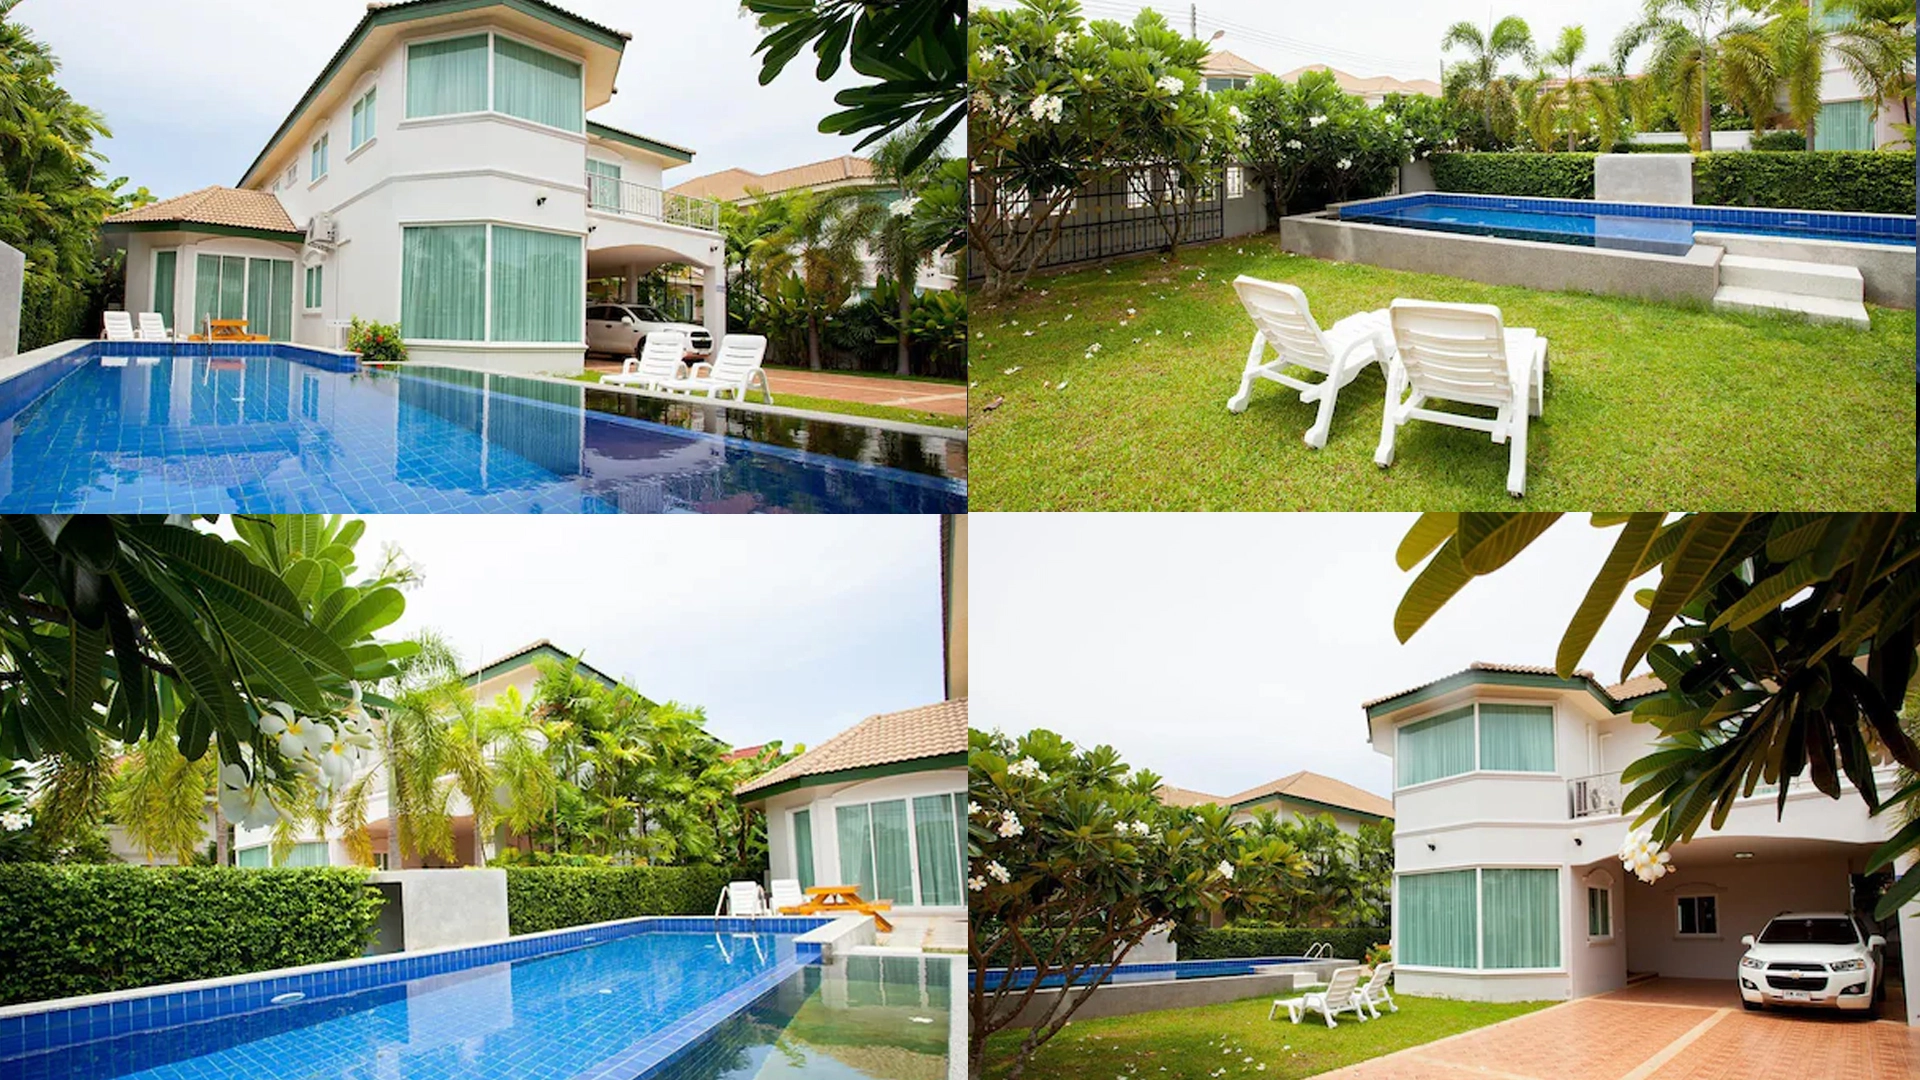 [파타야 풀빌라] 파타야 원더랜드 풀 빌라 (Pattaya Wonderland Pool Villa)